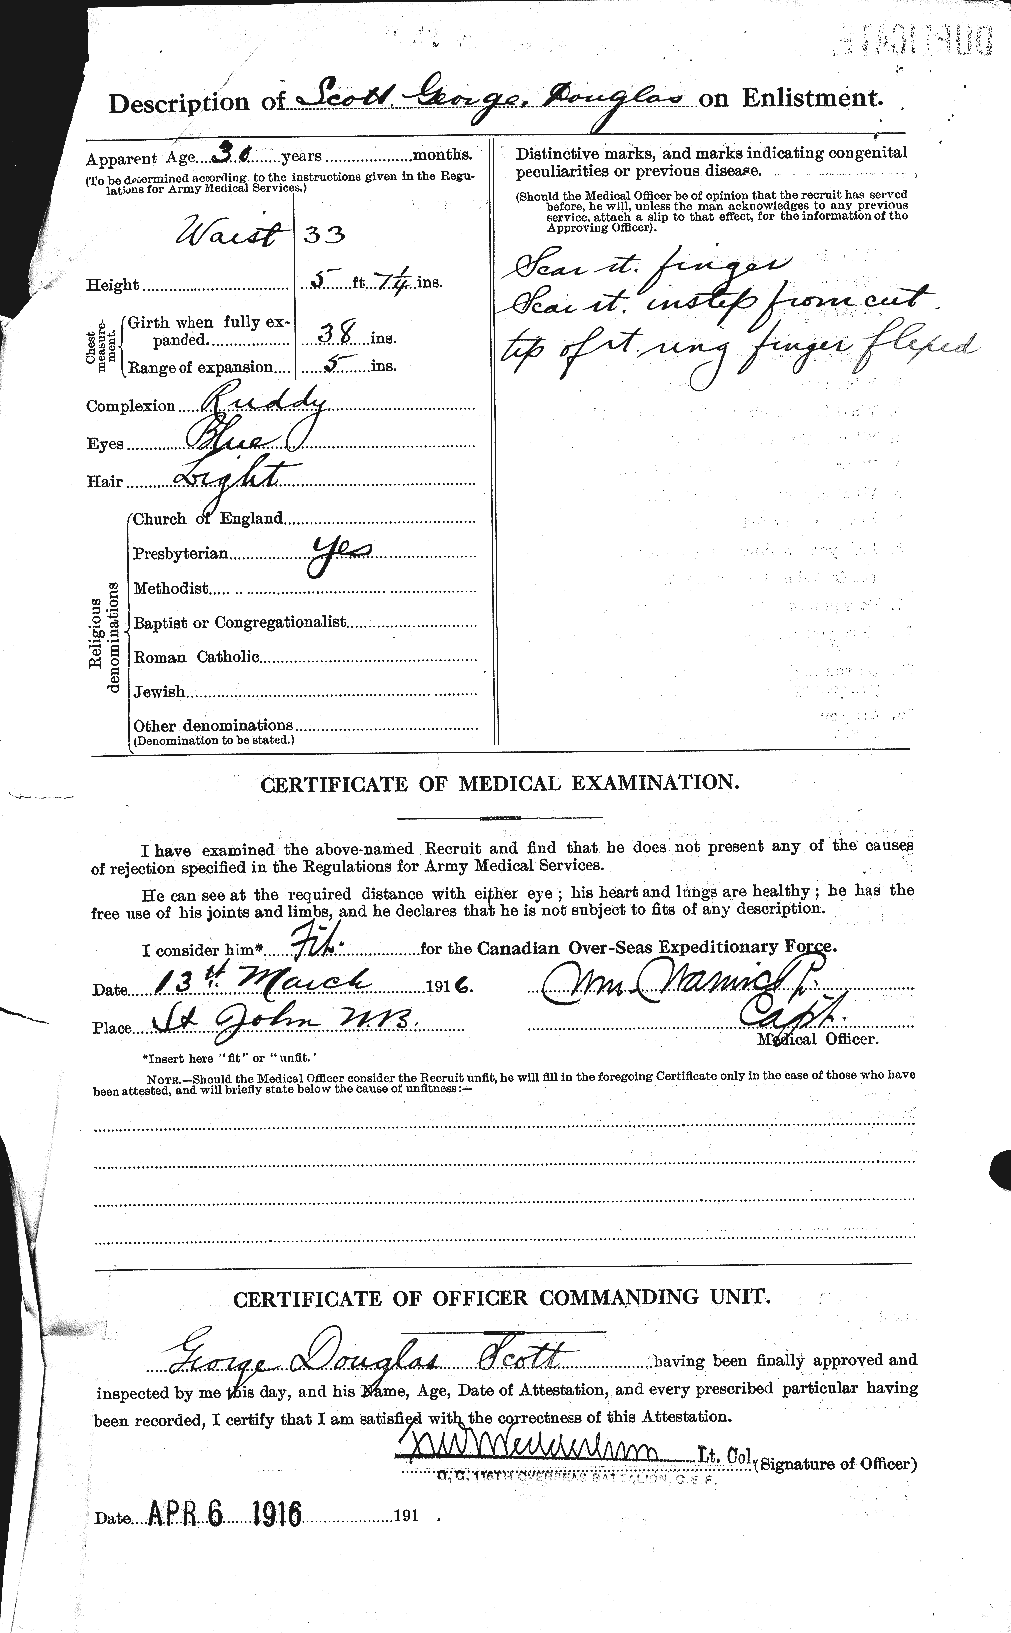 Dossiers du Personnel de la Première Guerre mondiale - CEC 083561b